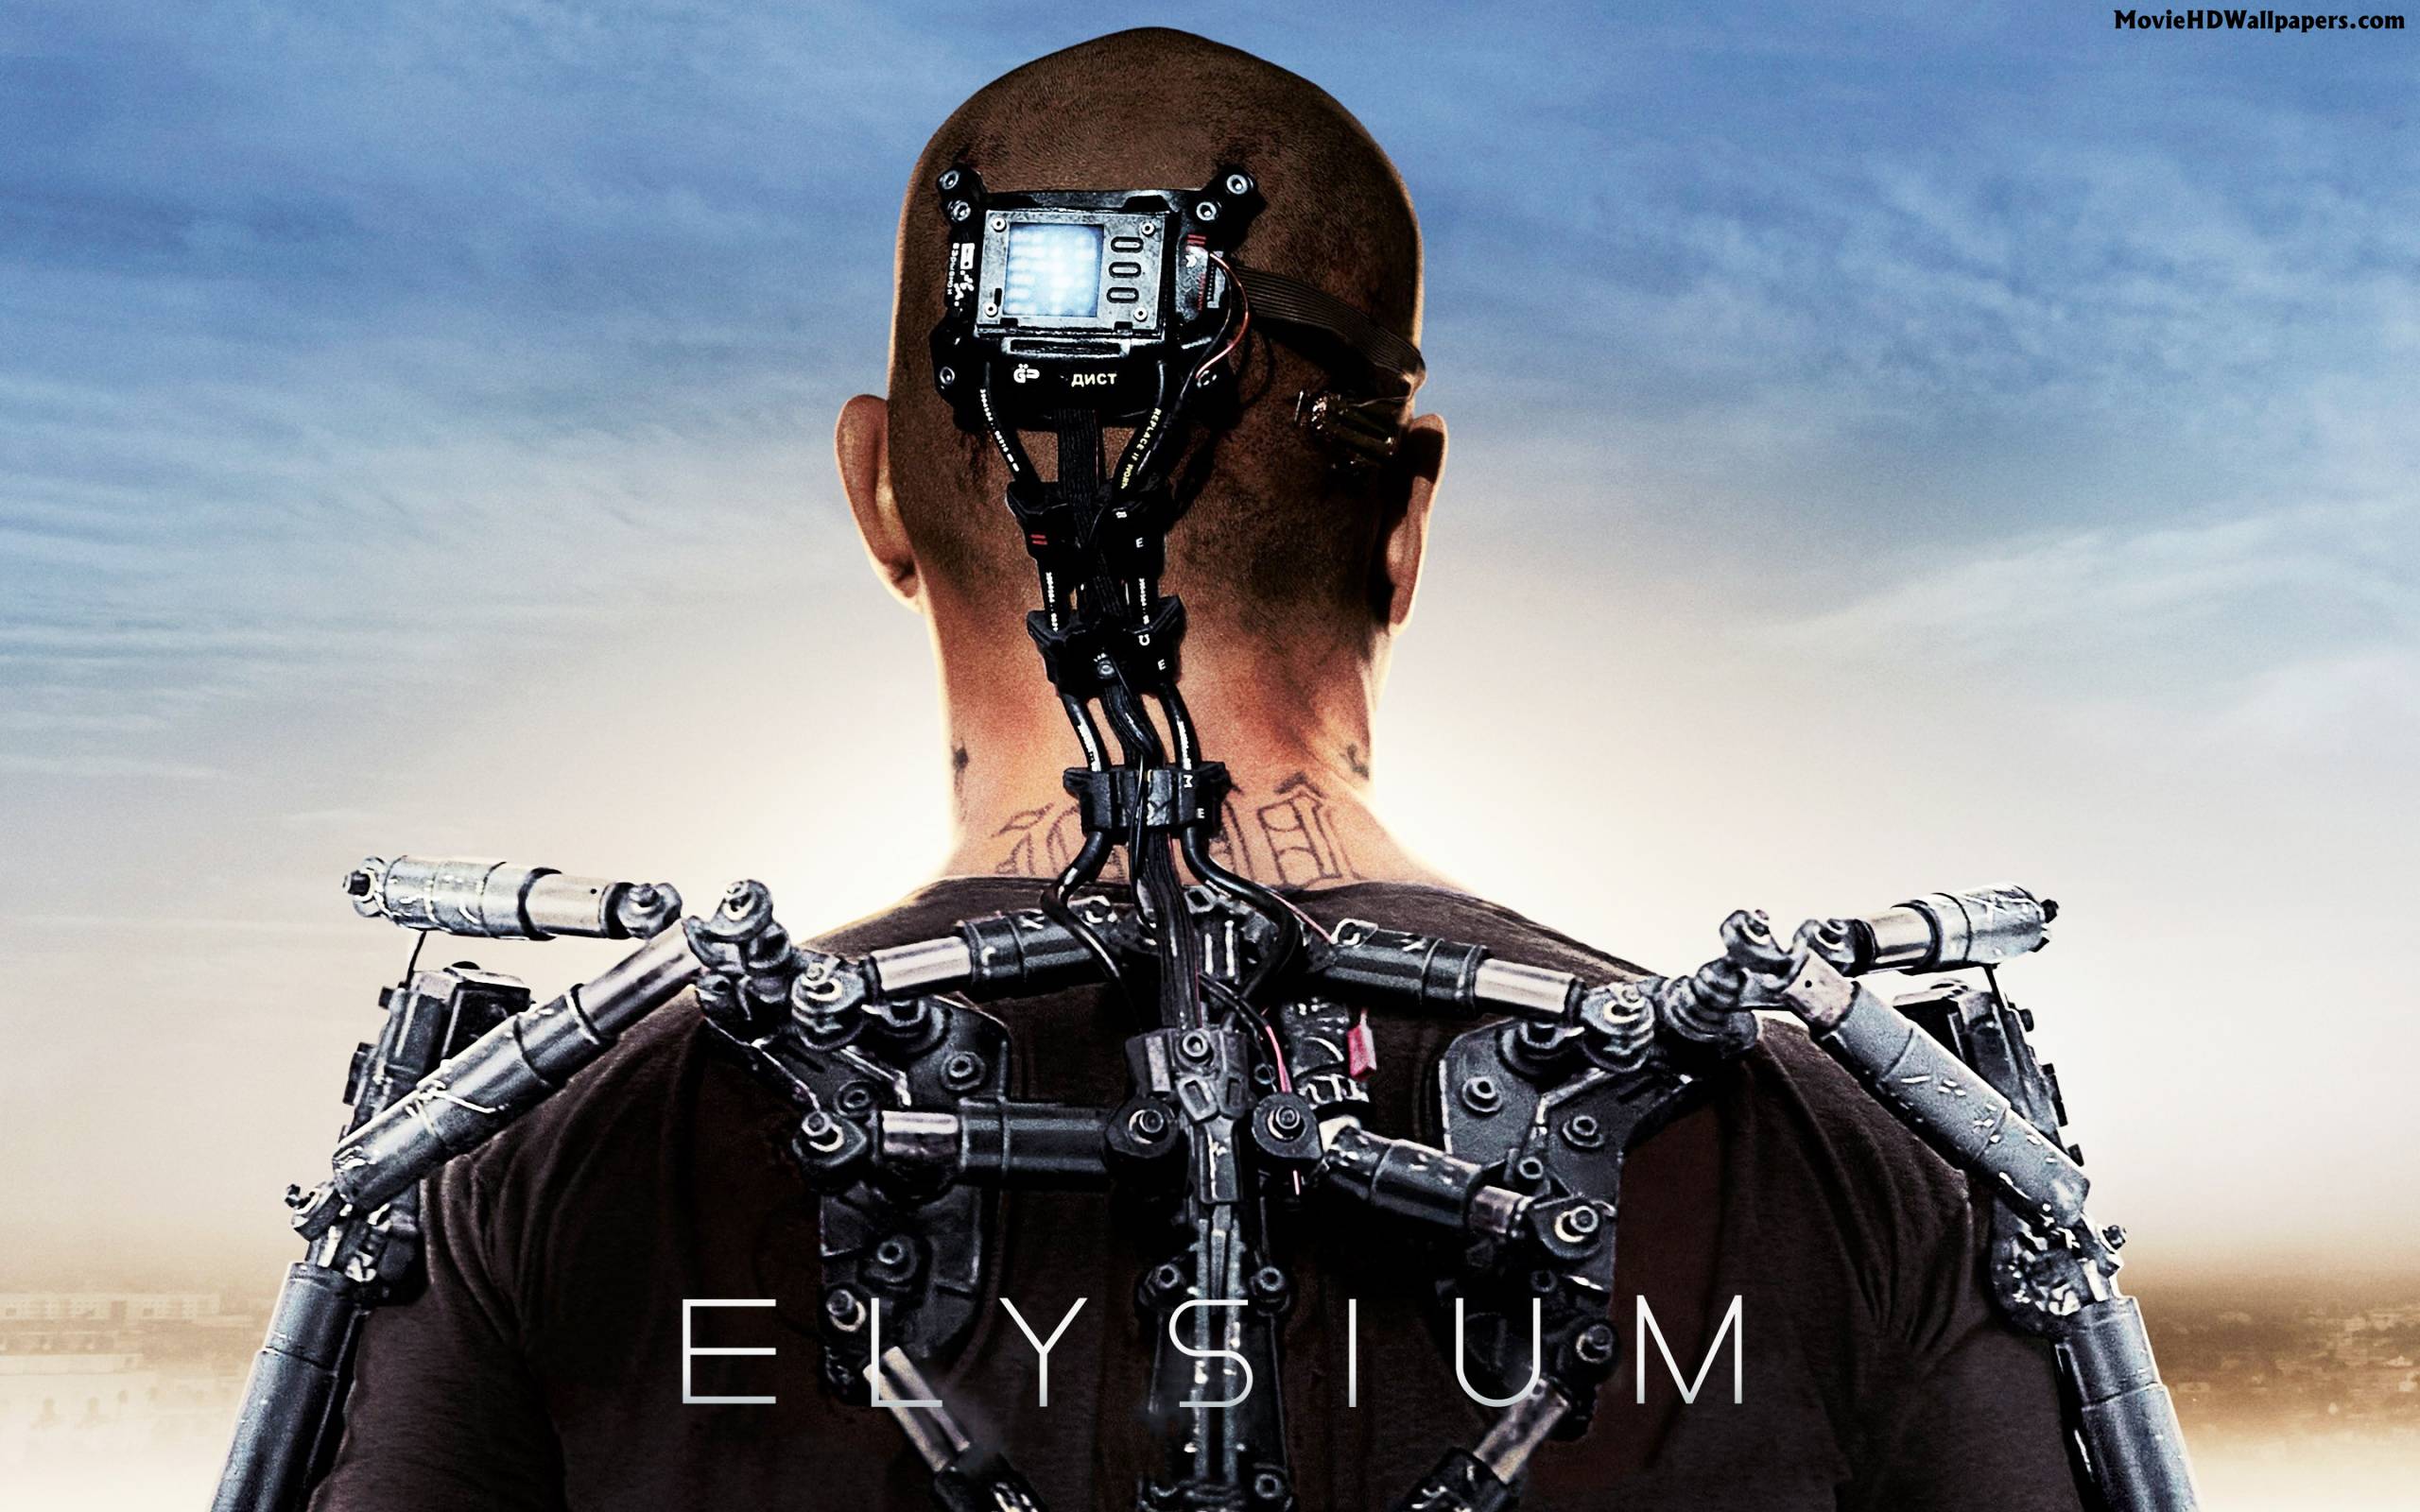 Elysium (2013) Images, Pics, Photos